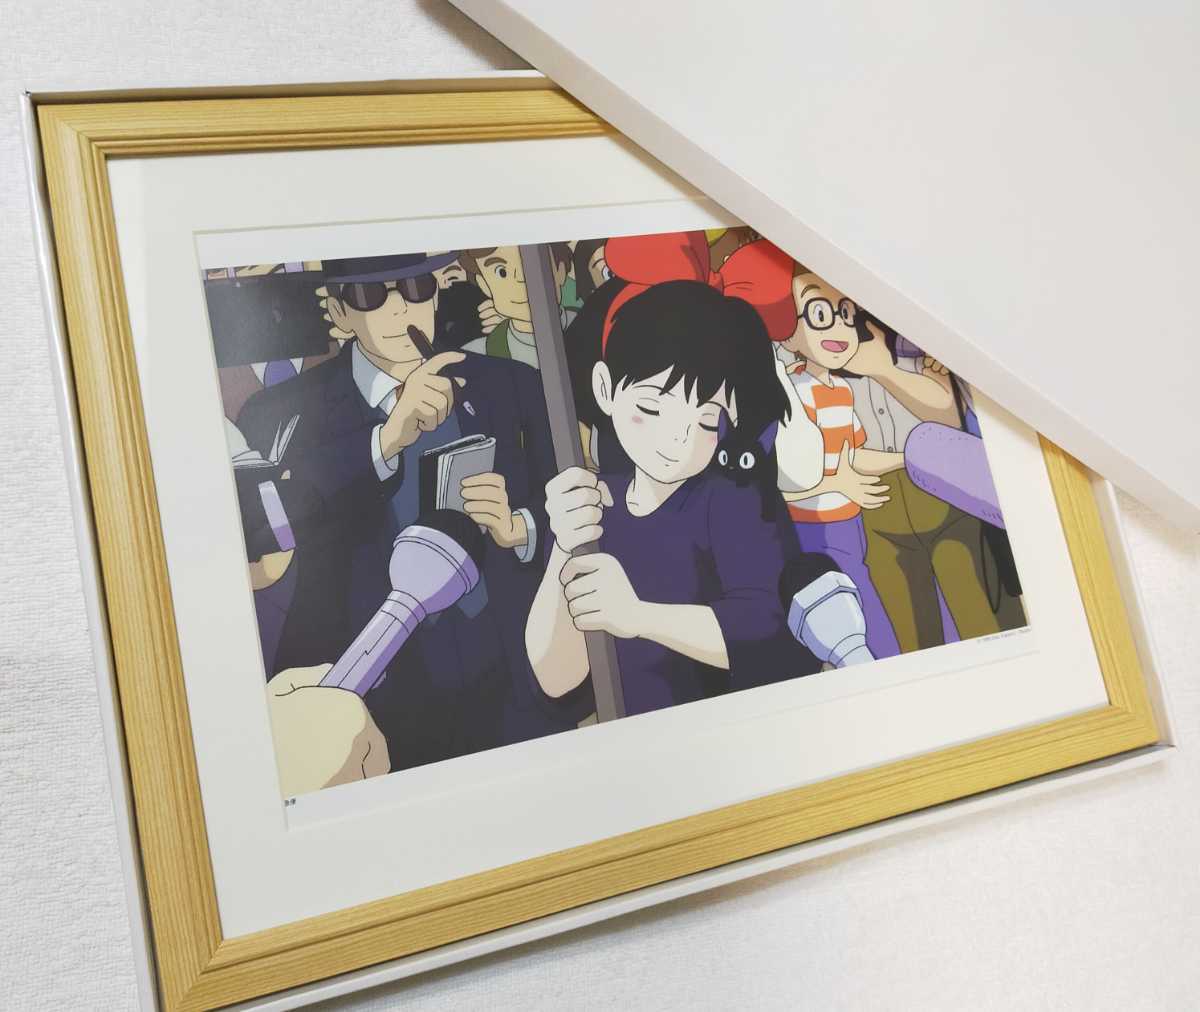 Super rare! Service de livraison du Studio Ghibli Kiki [Article encadré] Affiche Ghibli Inspection du calendrier Ghibli) Reproduction de peinture Ghibli Carte postale originale. Hayao Miyazaki, Ma ligne, Le service de livraison de Kiki, autres